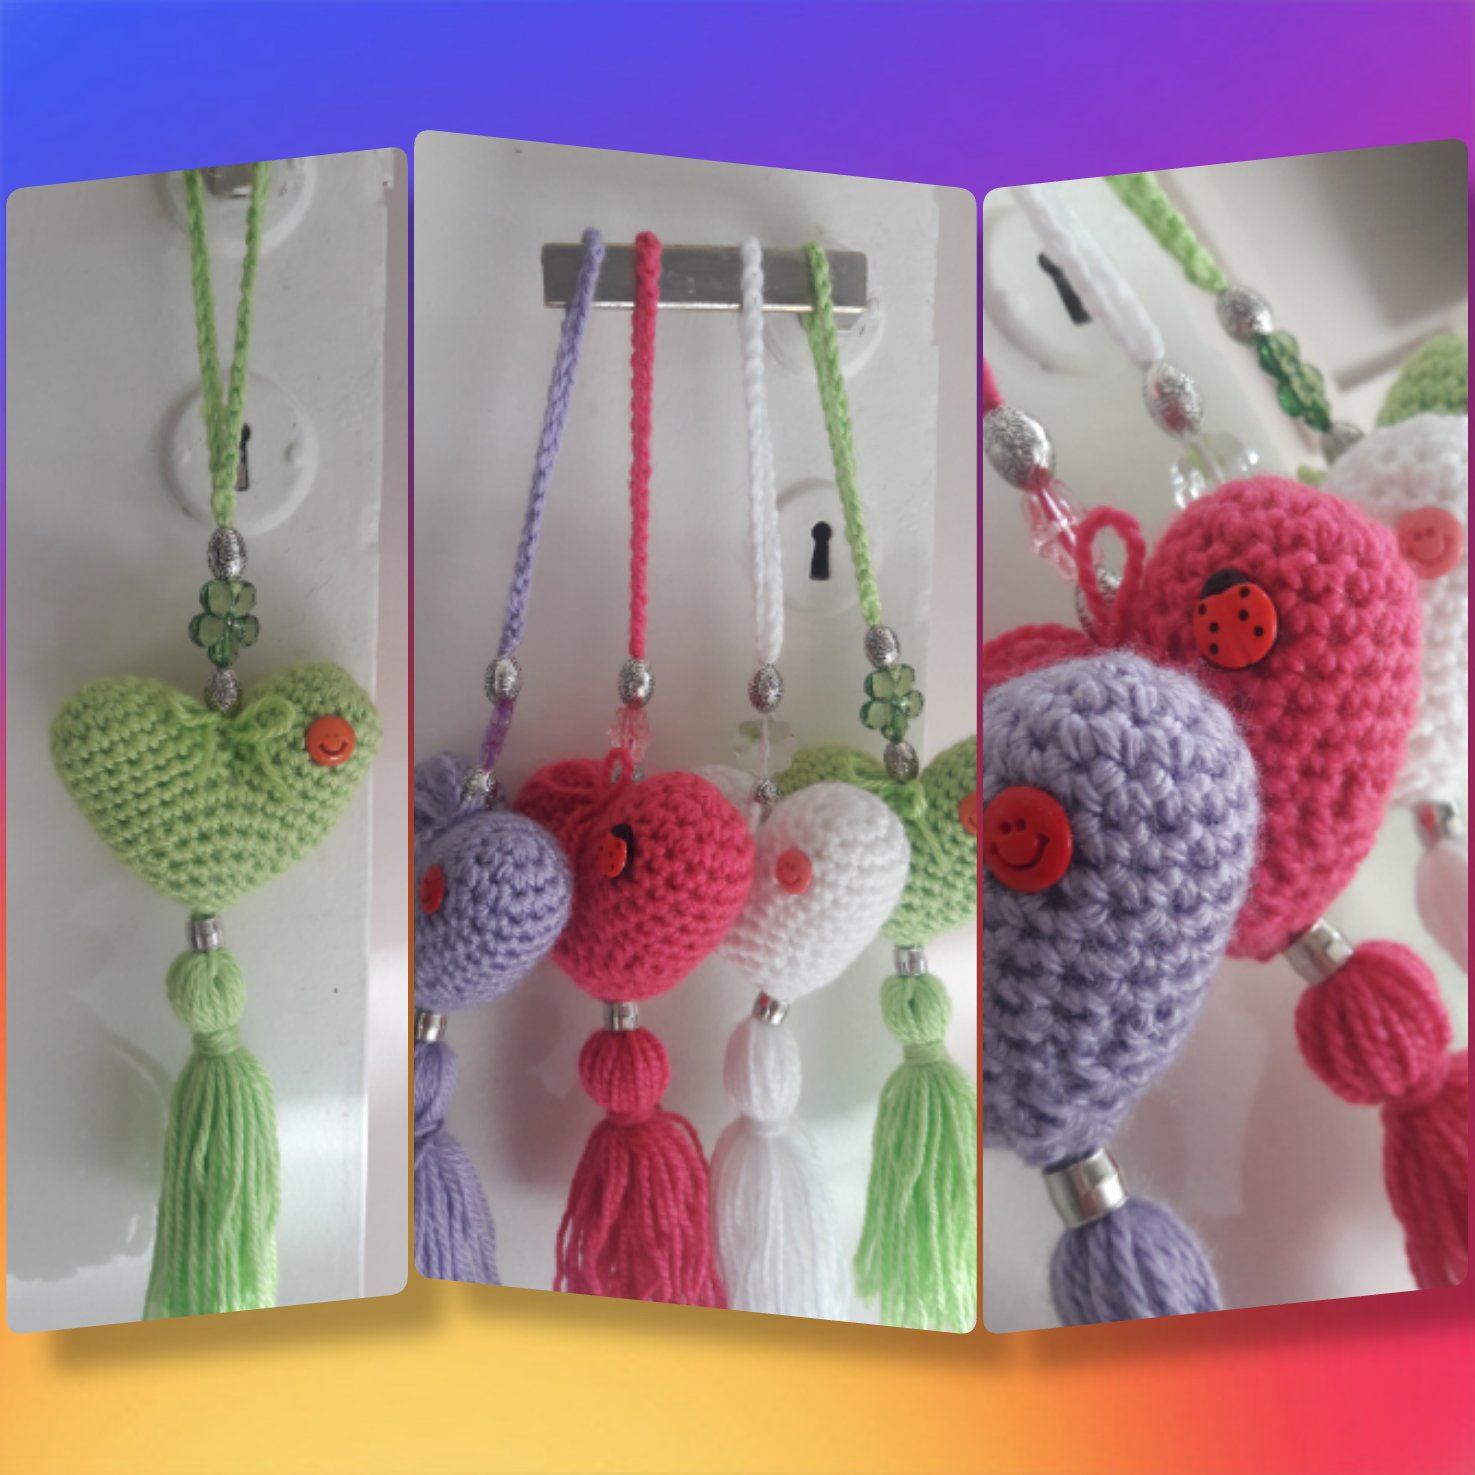 Crochet on Twitter: "Colgantes para la puerta! Para dar un toque de color a tus ambientes.💖💖 #crochet #handmade #colgantes #decoracion #hechoamano #Madryn https://t.co/WK03Wfc10P" / Twitter